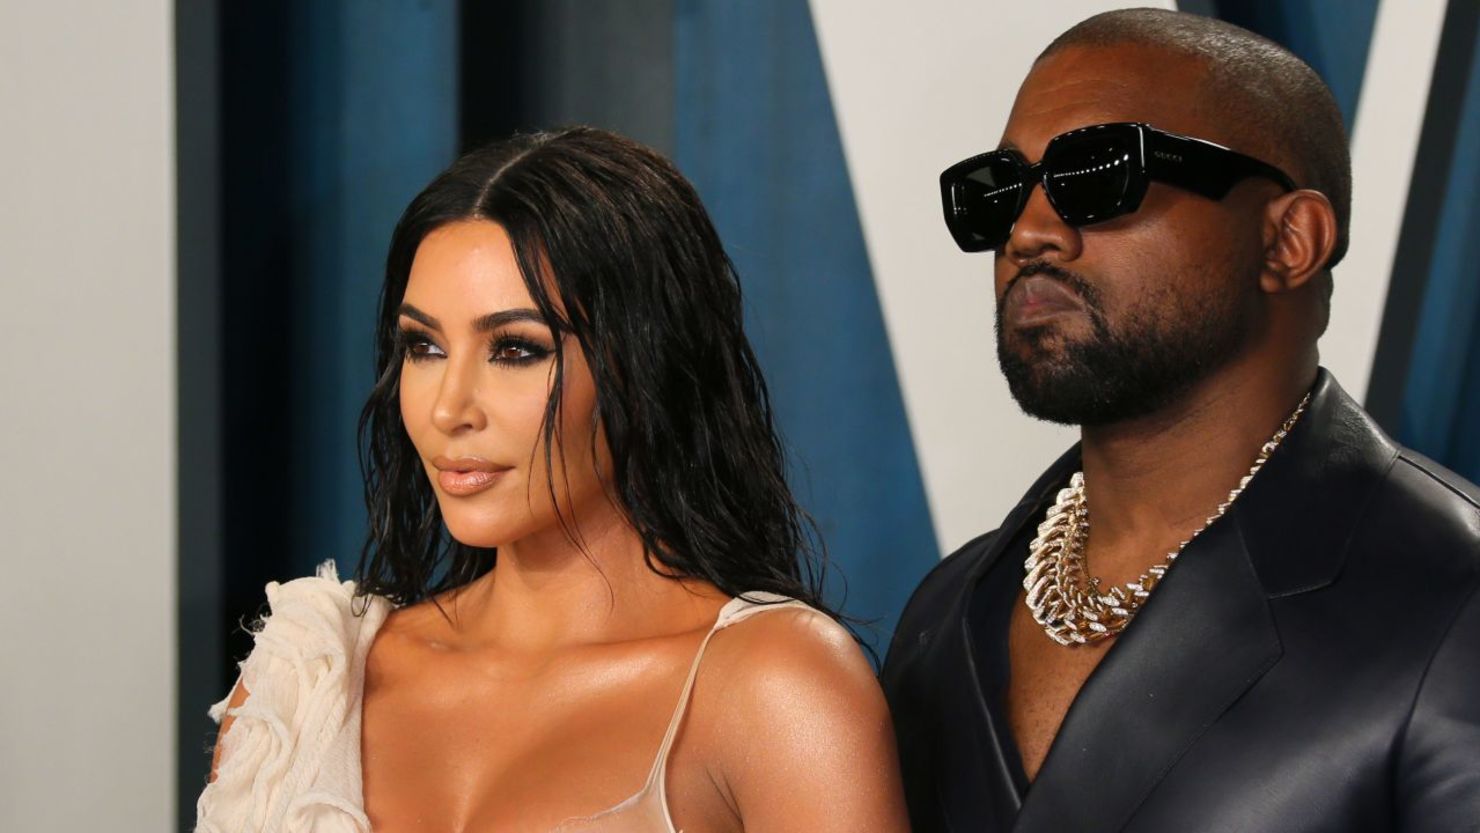 Kim Kardashian y el músico antes conocido como Kanye West, que en esta foto asisten a la fiesta de los Oscar de "Vanity Fair" en 2020, llegaron a un acuerdo de divorcio, le dijo a CNN una fuente con conocimiento de las negociaciones.